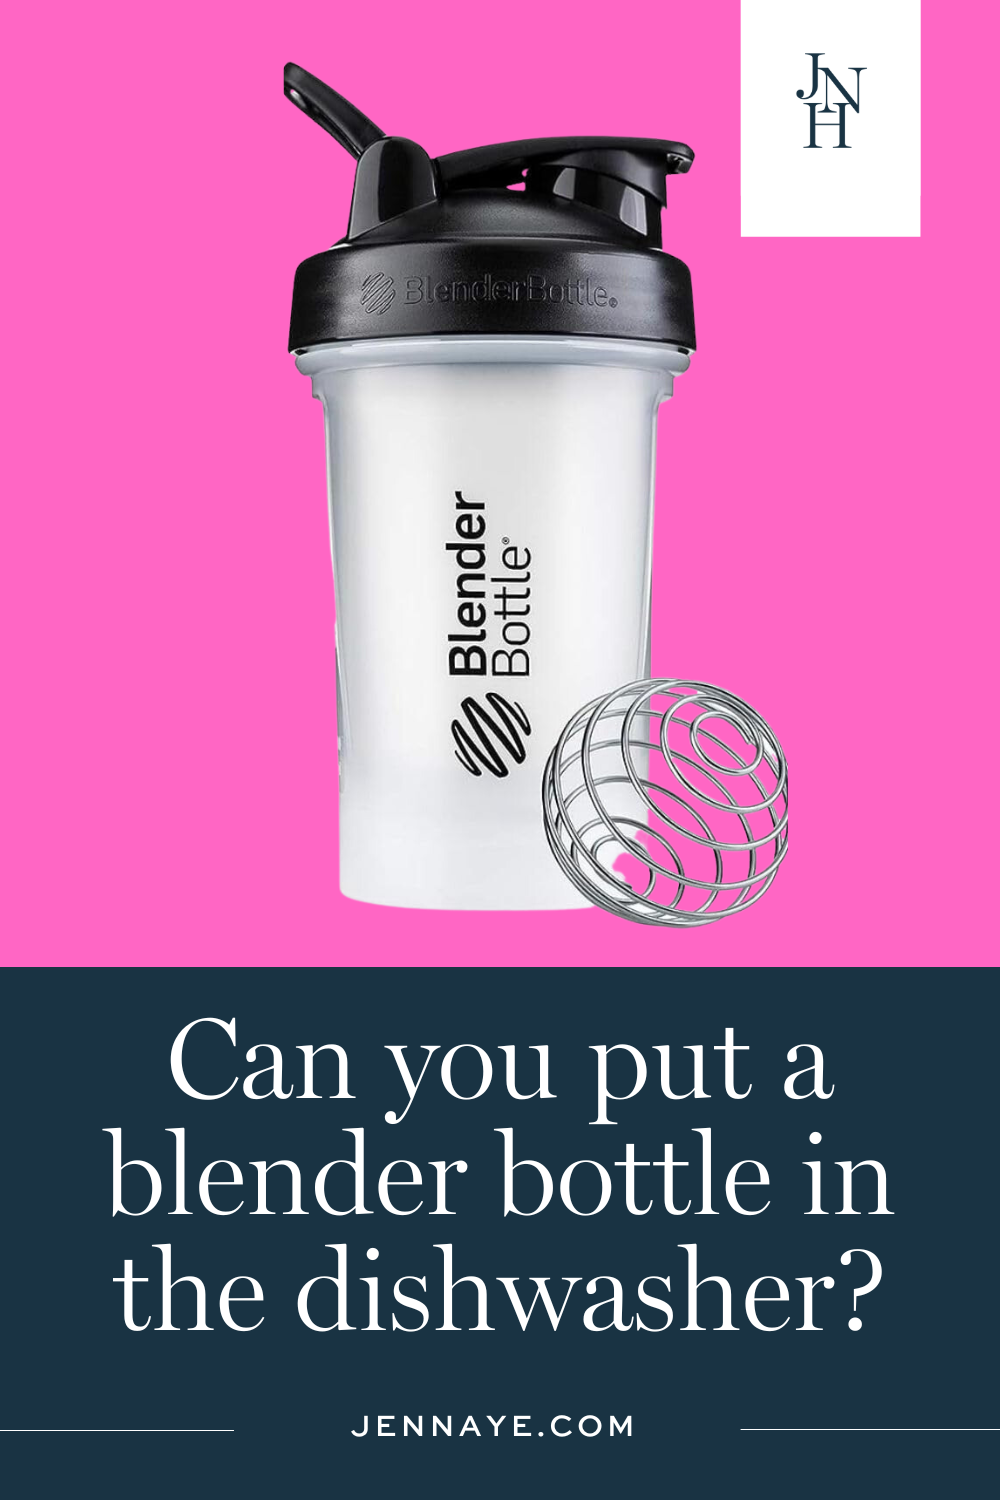 How to Clean a Blender Bottle: Manual vs Dishwasher